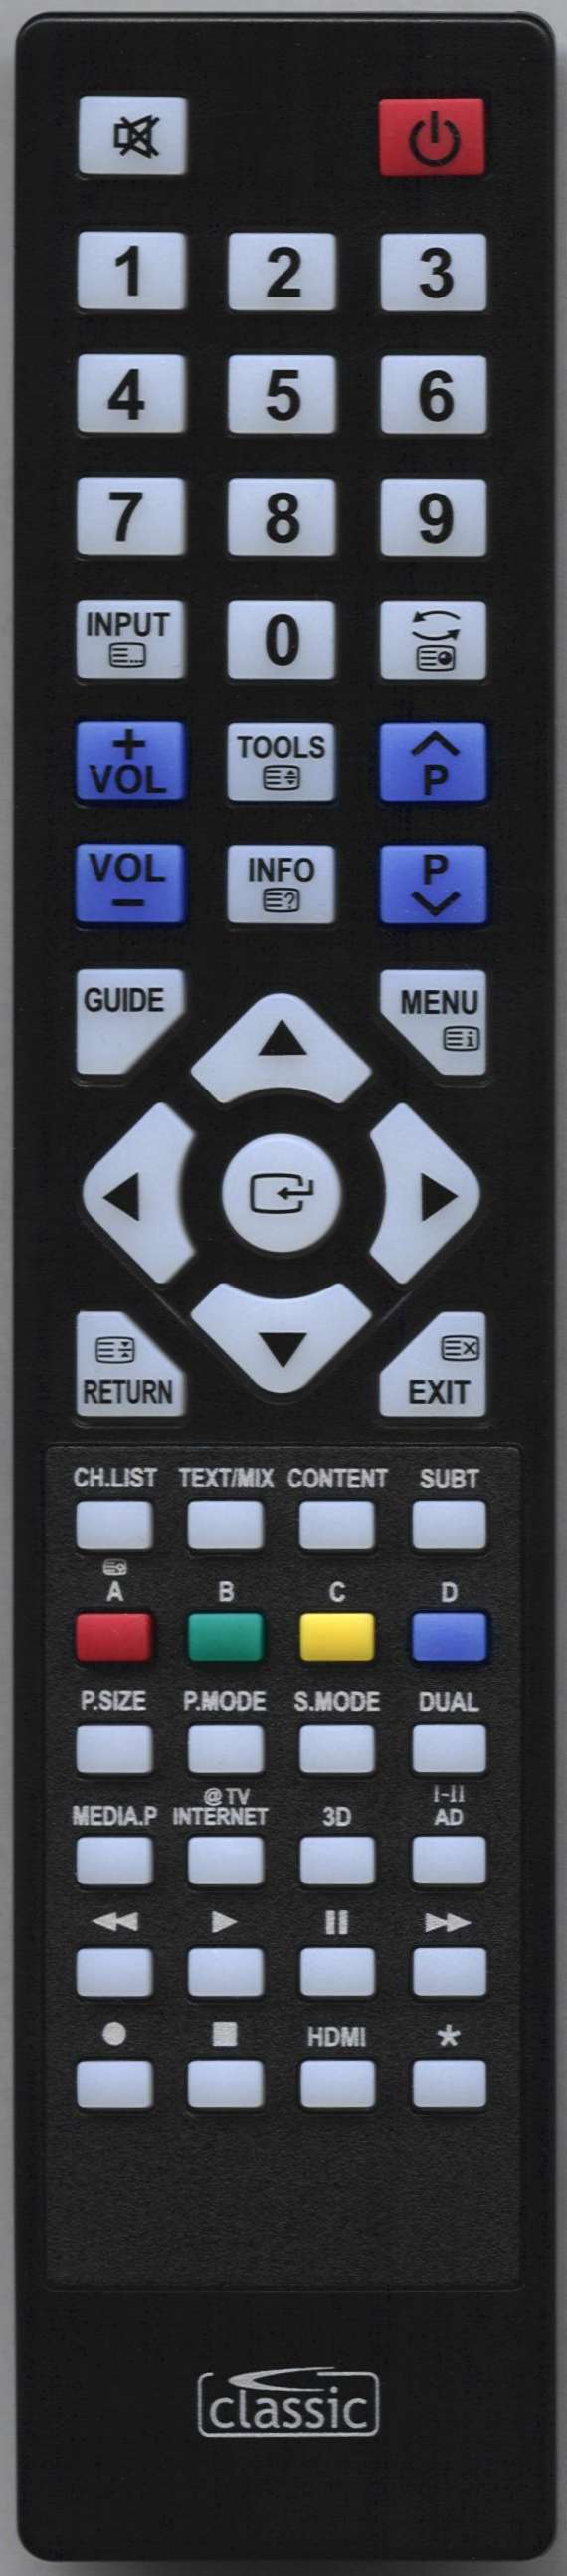 SAMSUNG UE32C6800USXXN Remote Control